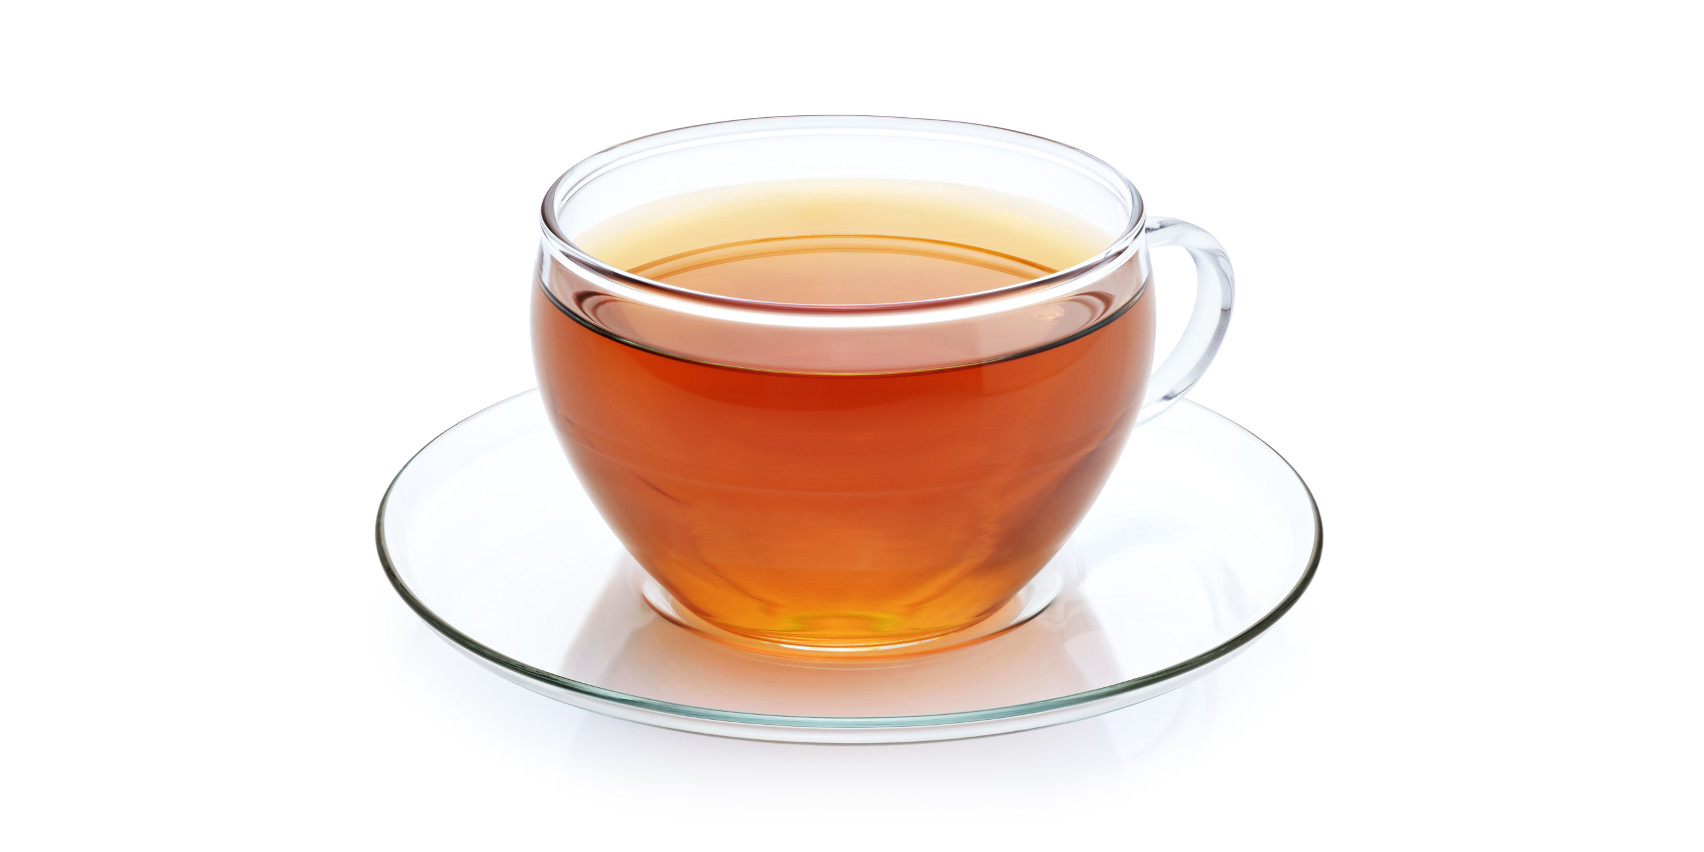 Tee gegen Erkältung